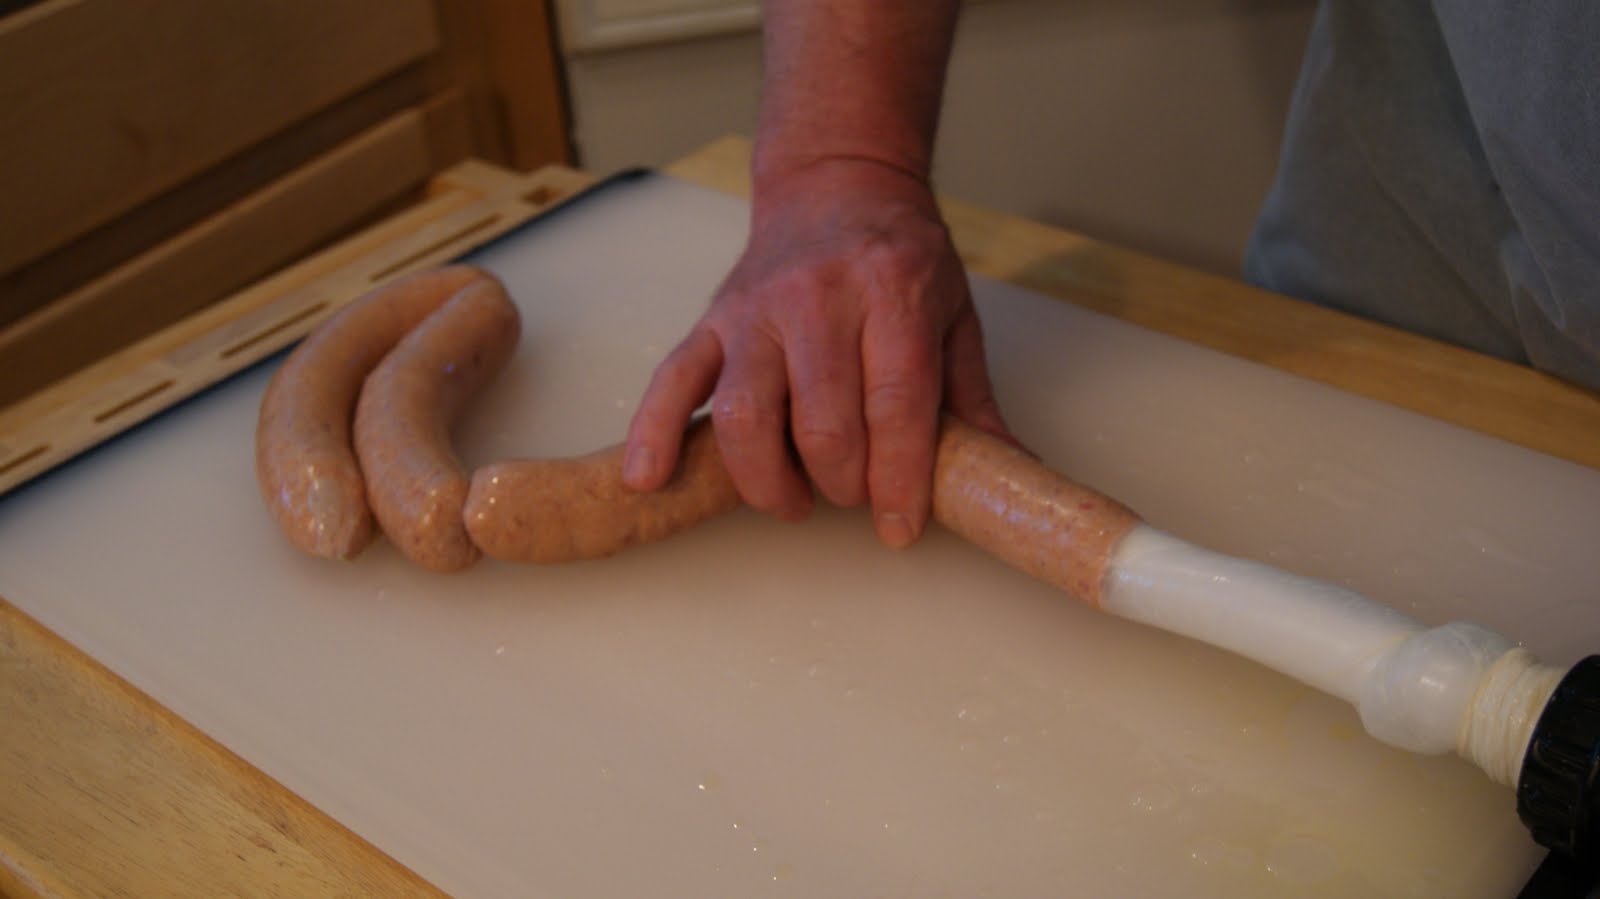 Рецепт печеночной колбасы в кишке